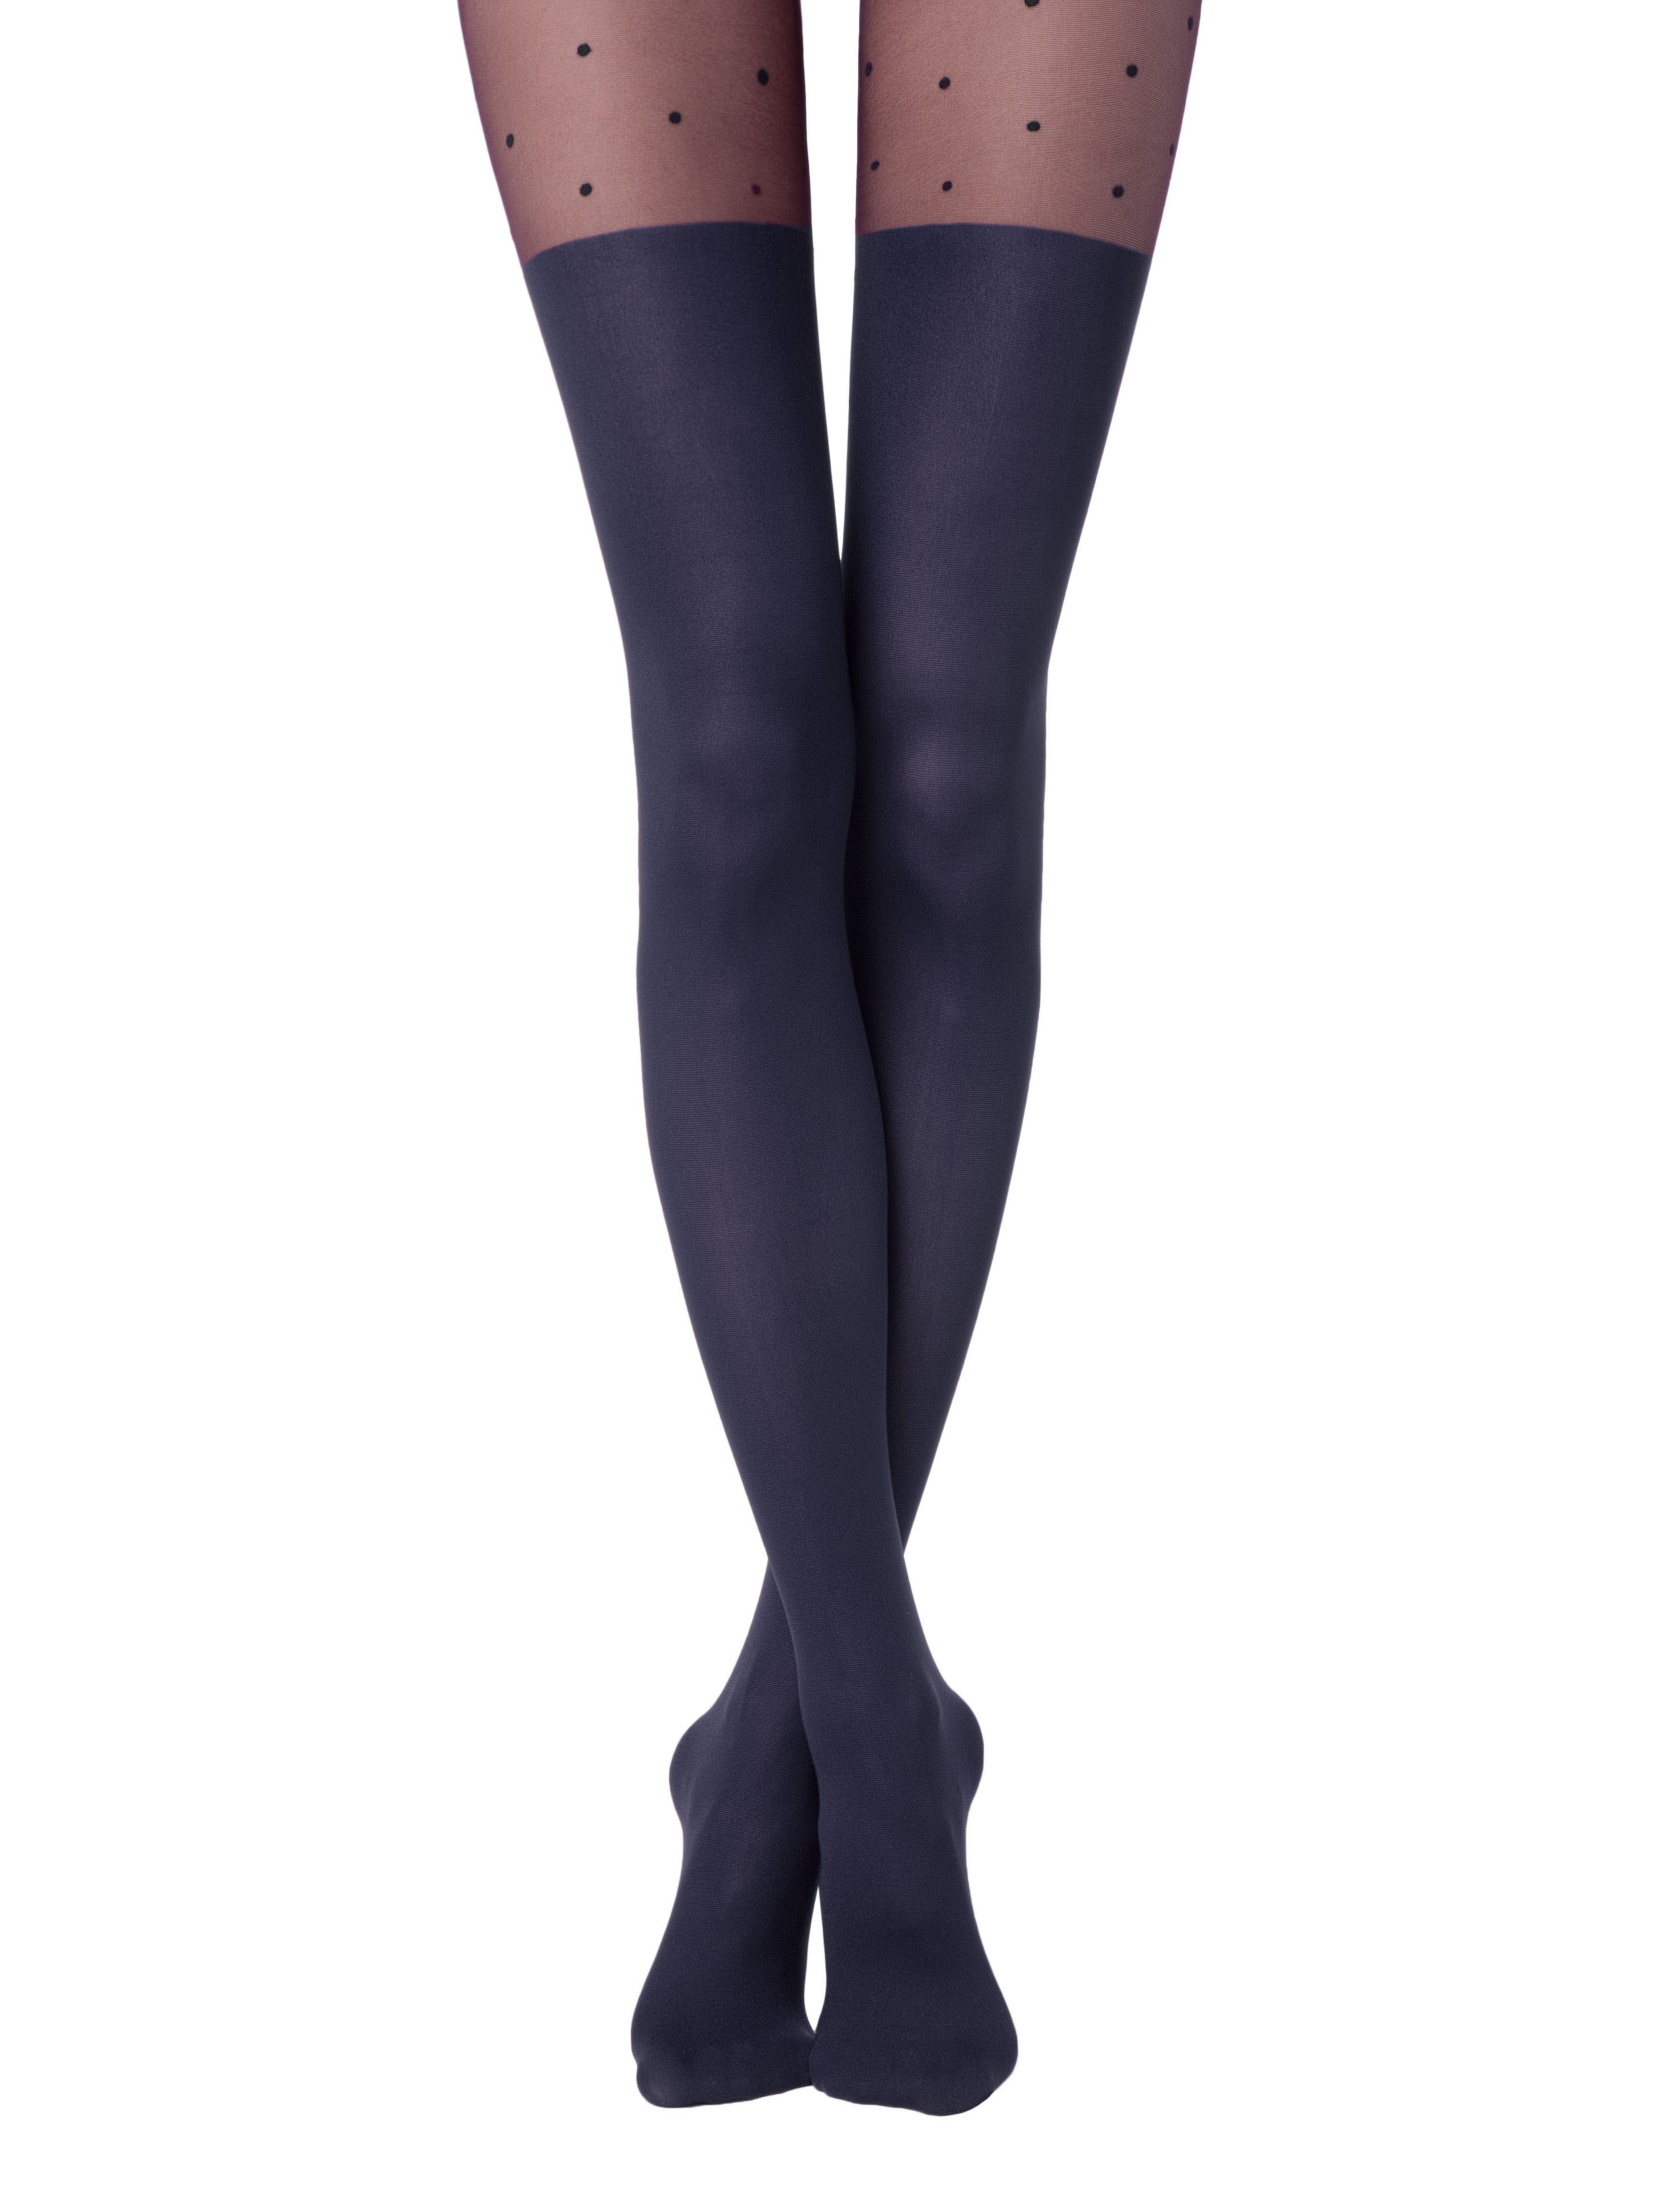 Modre barvne hlačne nogavice v videzu nadkolenk s pikčastim vzorcem v zgornjem delu Conte Elegant Sensation